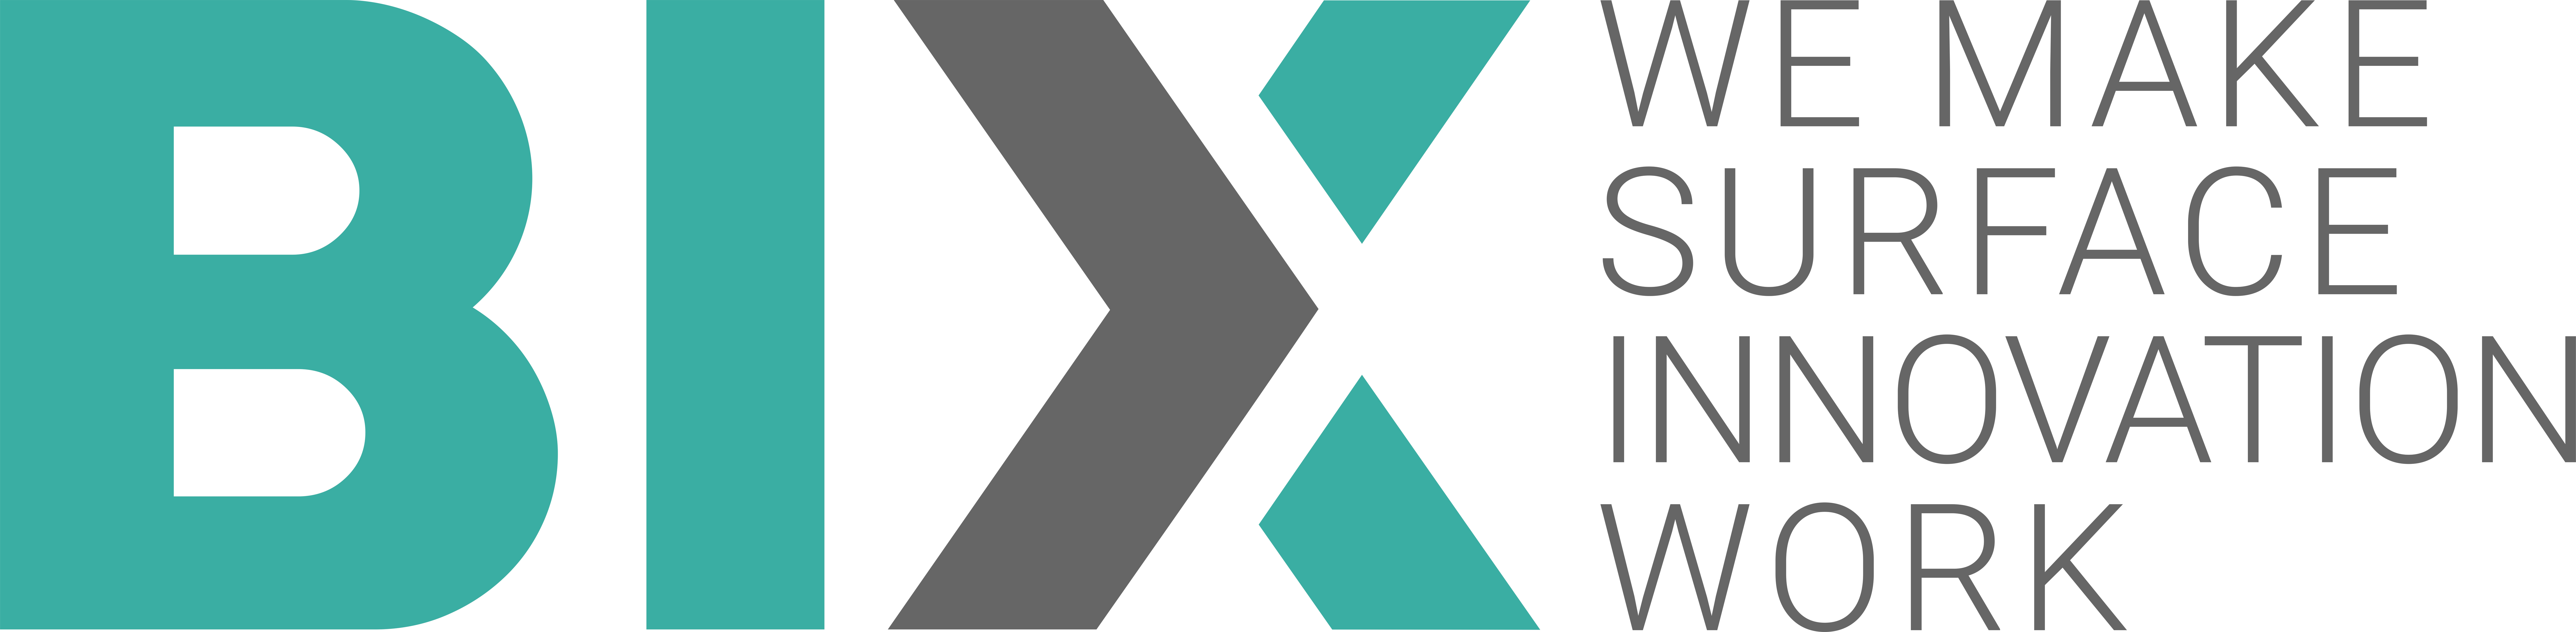 BIX-Logo_dunkel.jpg